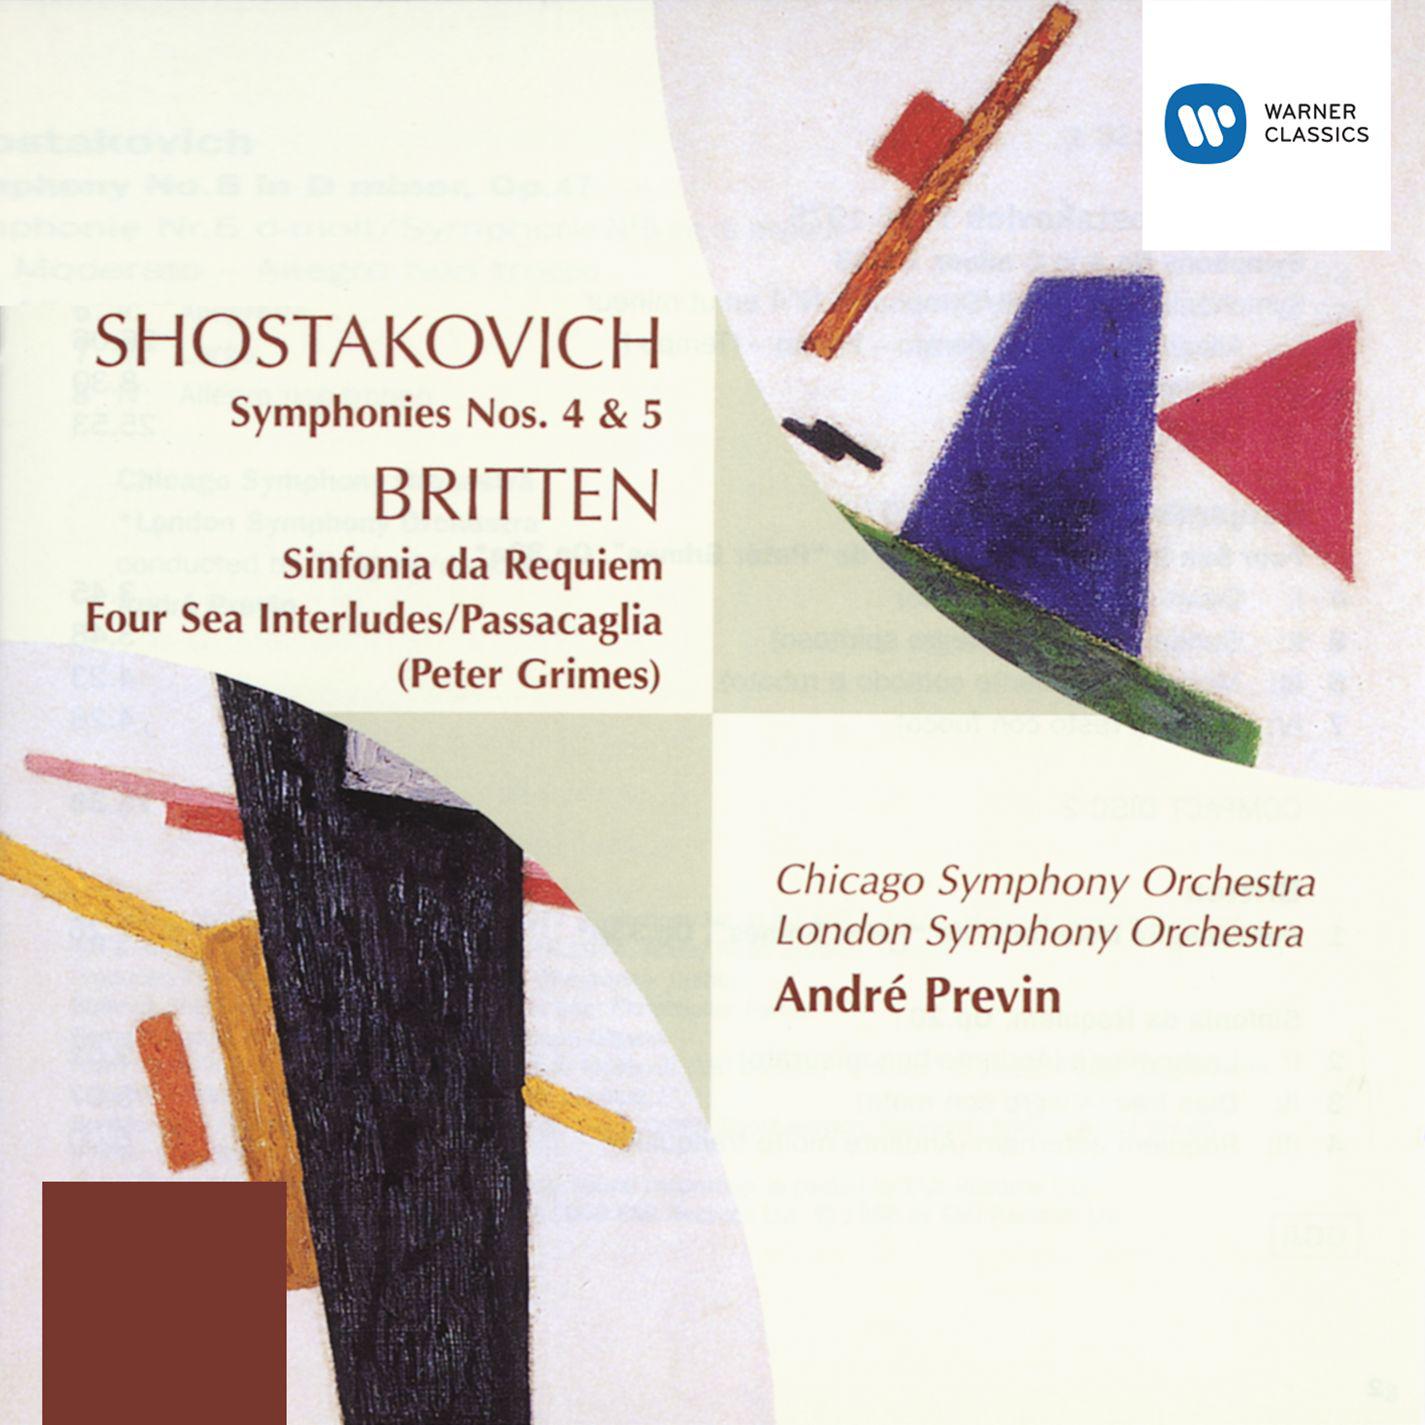 Shostakovich/Britten: Orchestral Music